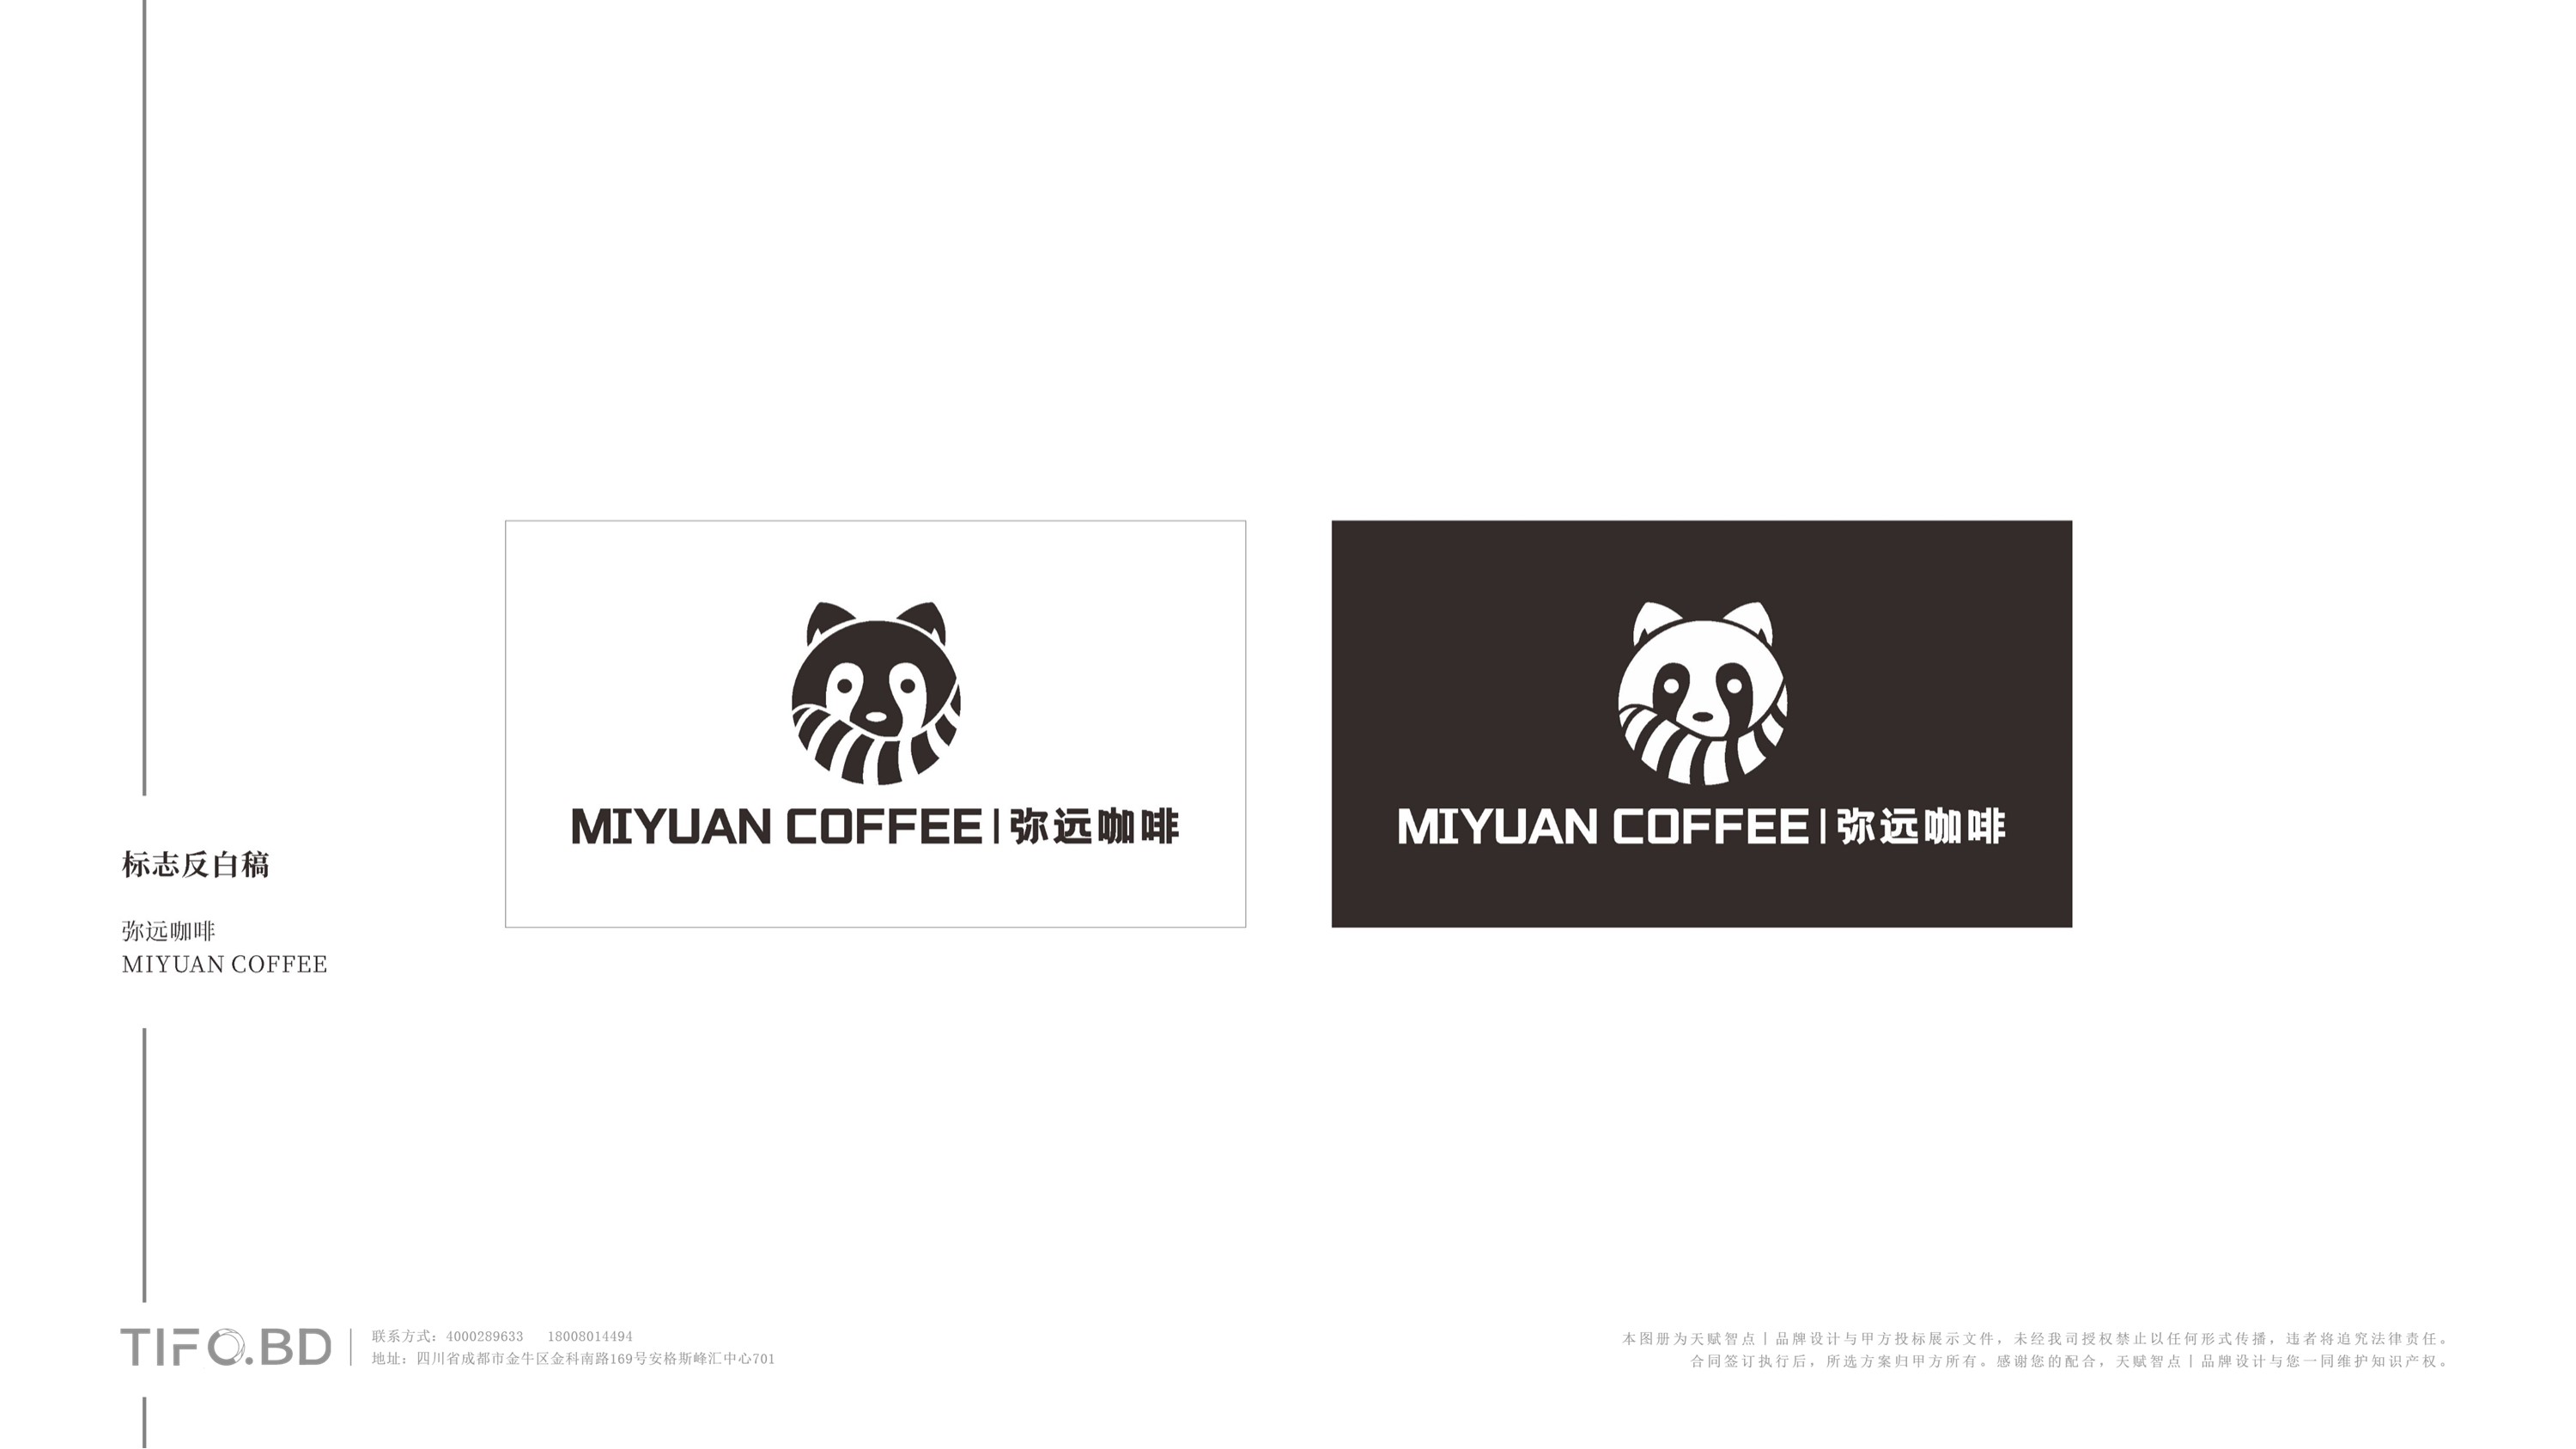 咖啡餐饮品牌全案设计 (39).jpg